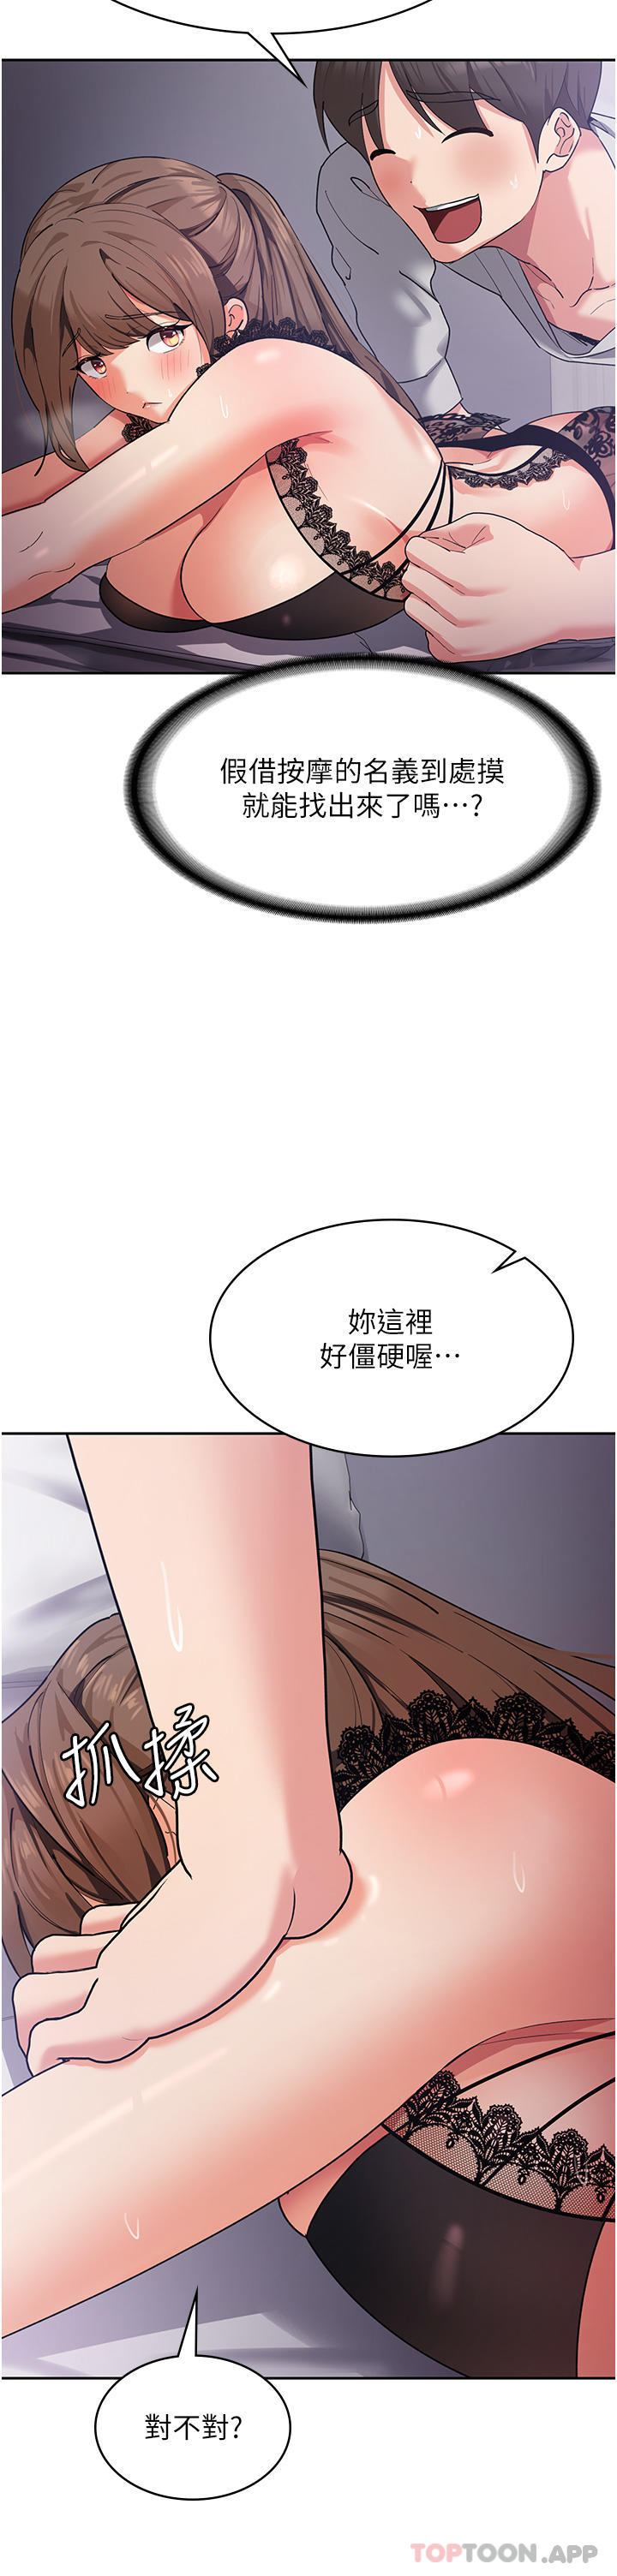 韩国污漫画 消災解餓 第12话-寻找好友的敏感带 36